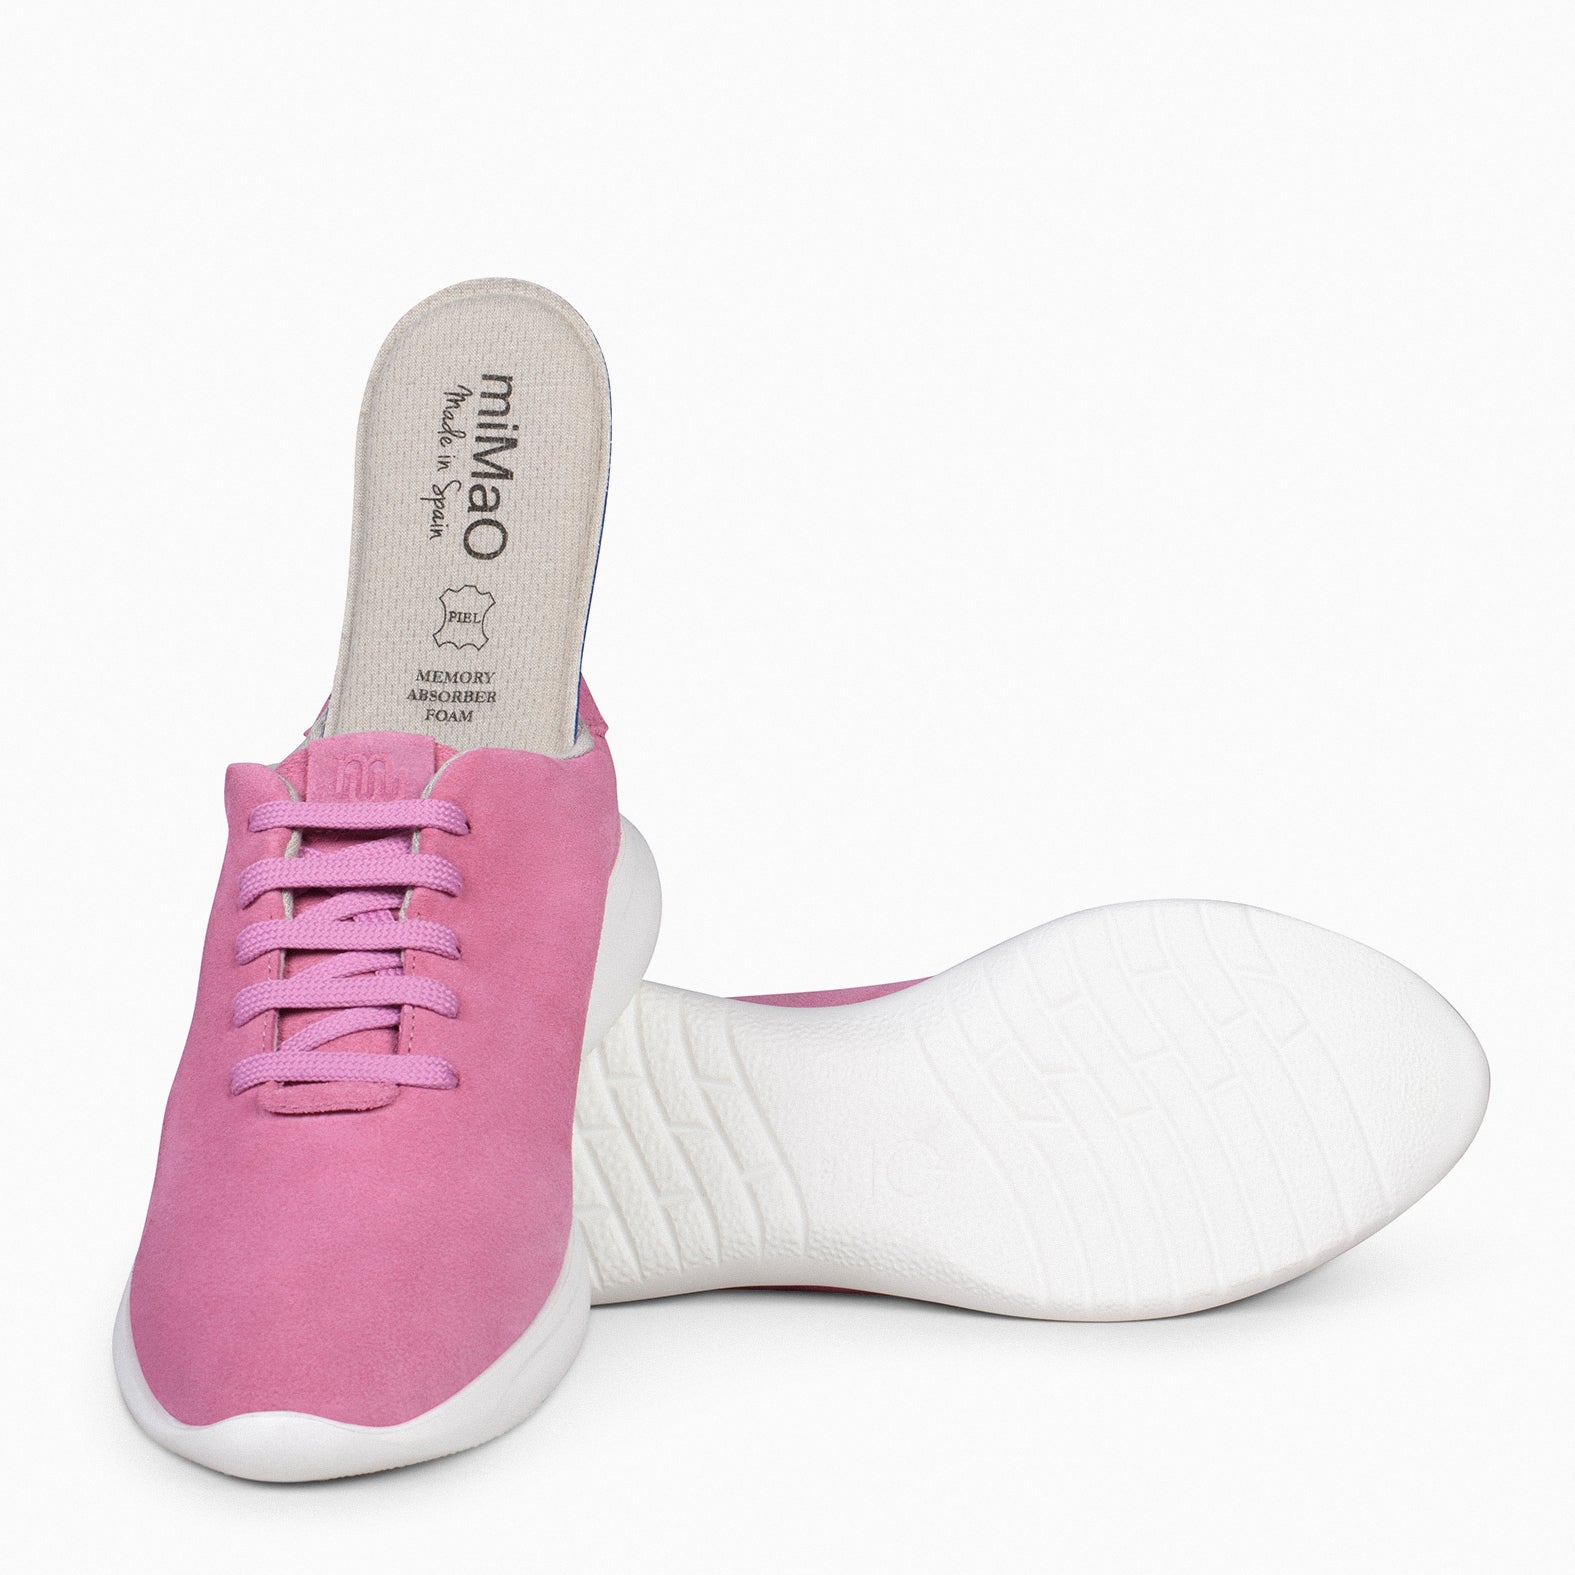 WALK – PINK comfortable women sneakers